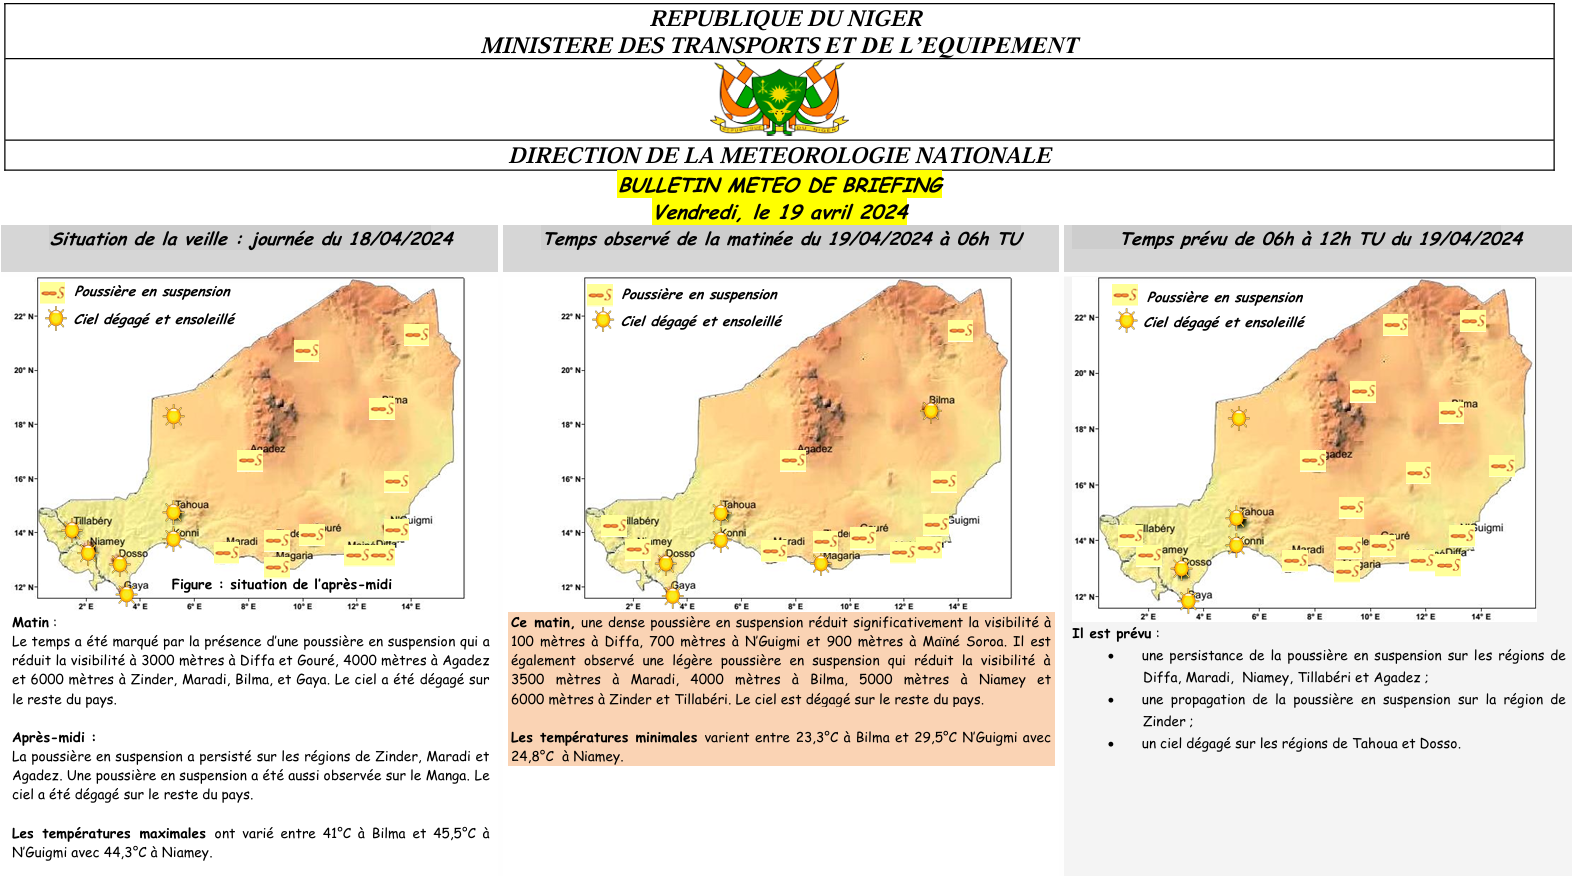 Bulletin météo de briefing du 19 avril 2024 sur le Niger pour les prochaines 06heures.
Elaboré par la Direction de la Météorologie Nationale du Niger.